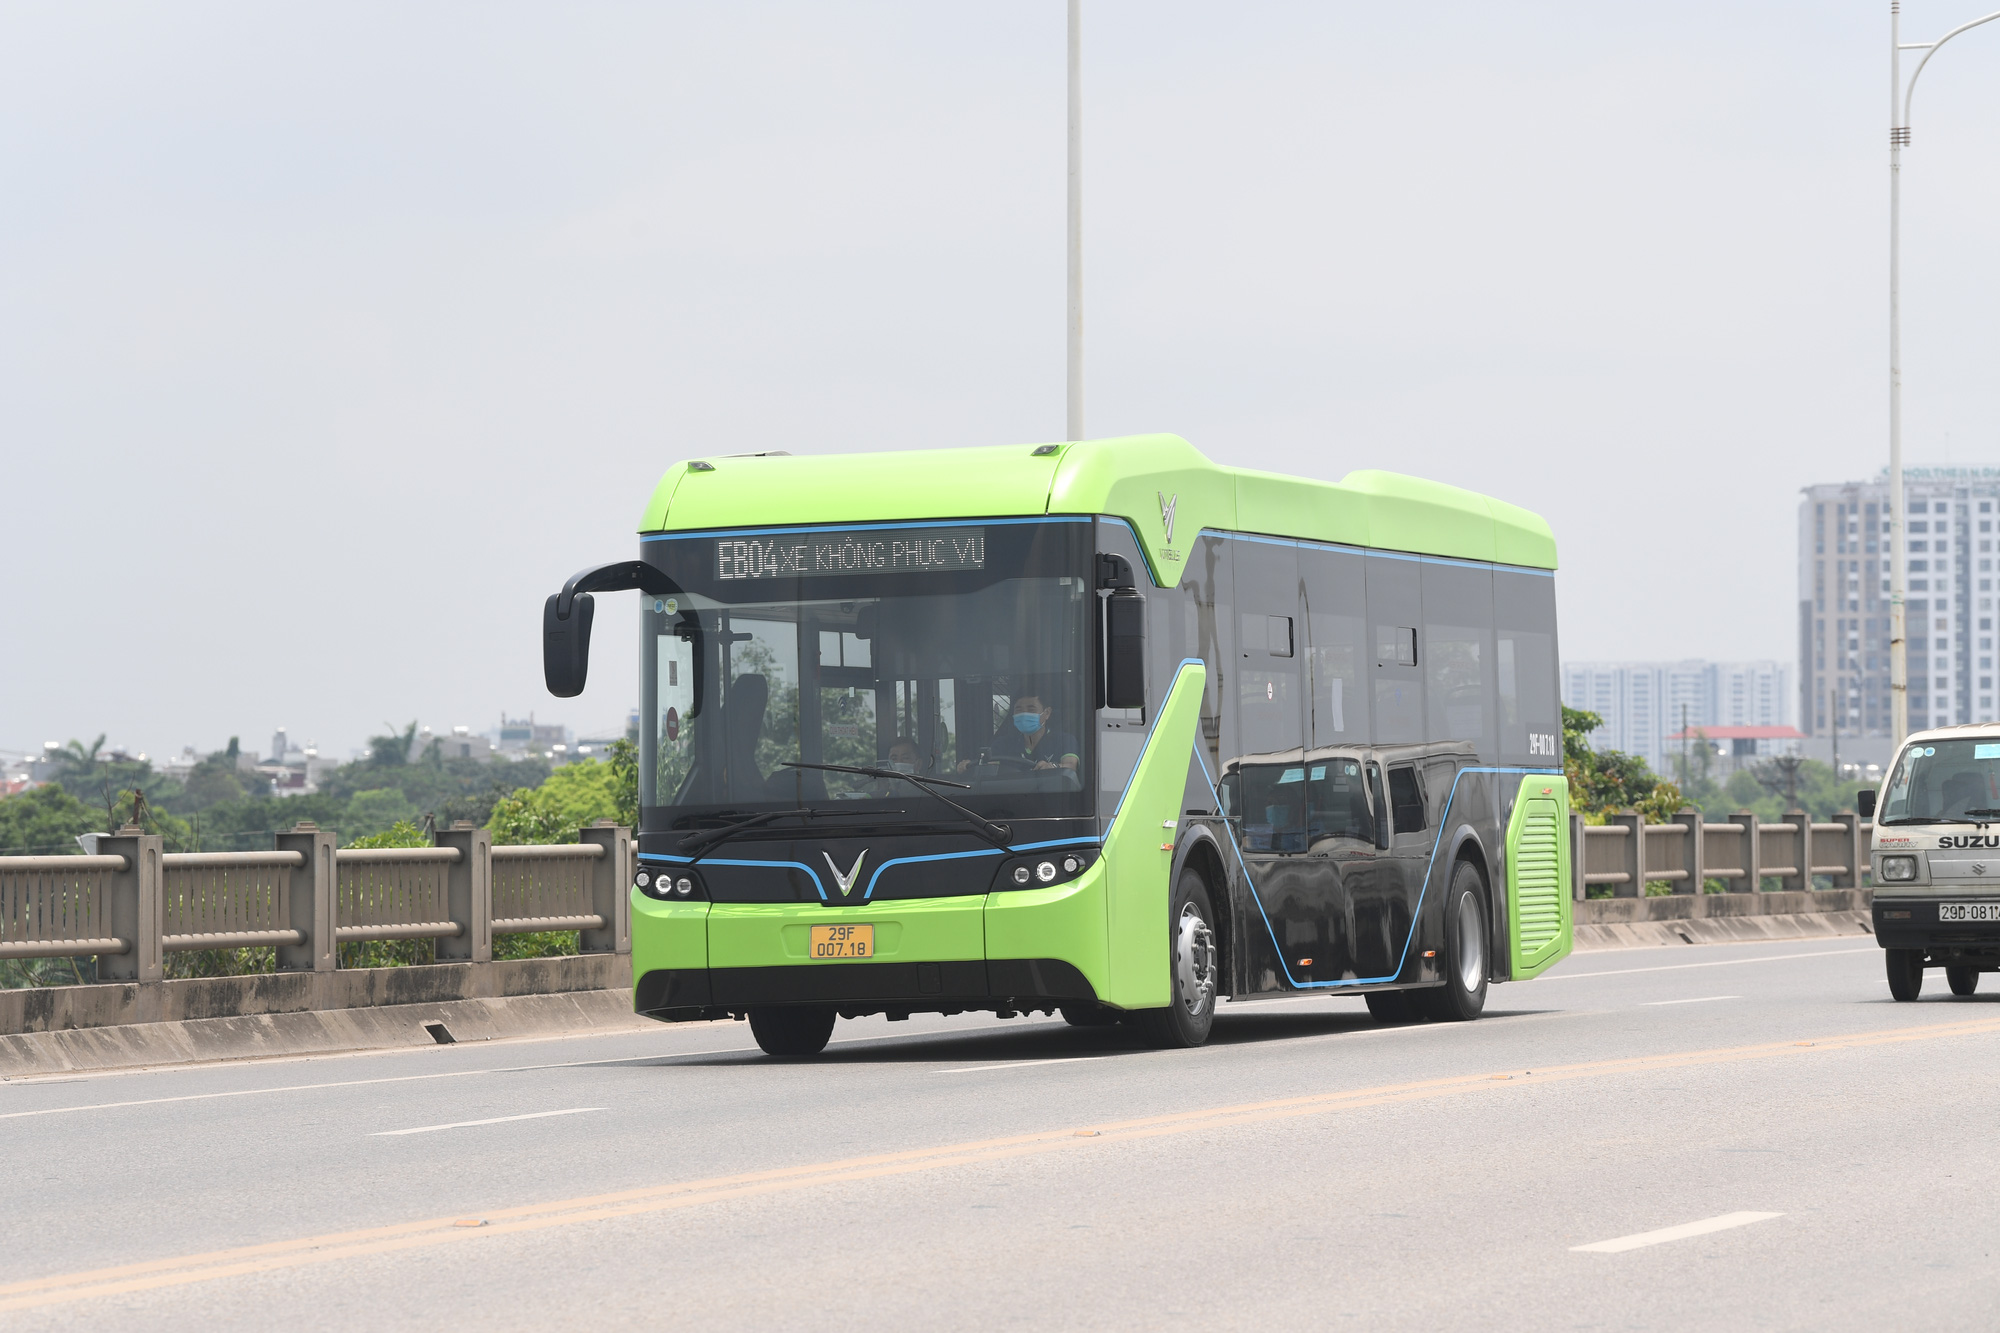 Lộ hình ảnh xe buýt năng lượng điện VinFast được vận trả về Hà Nội